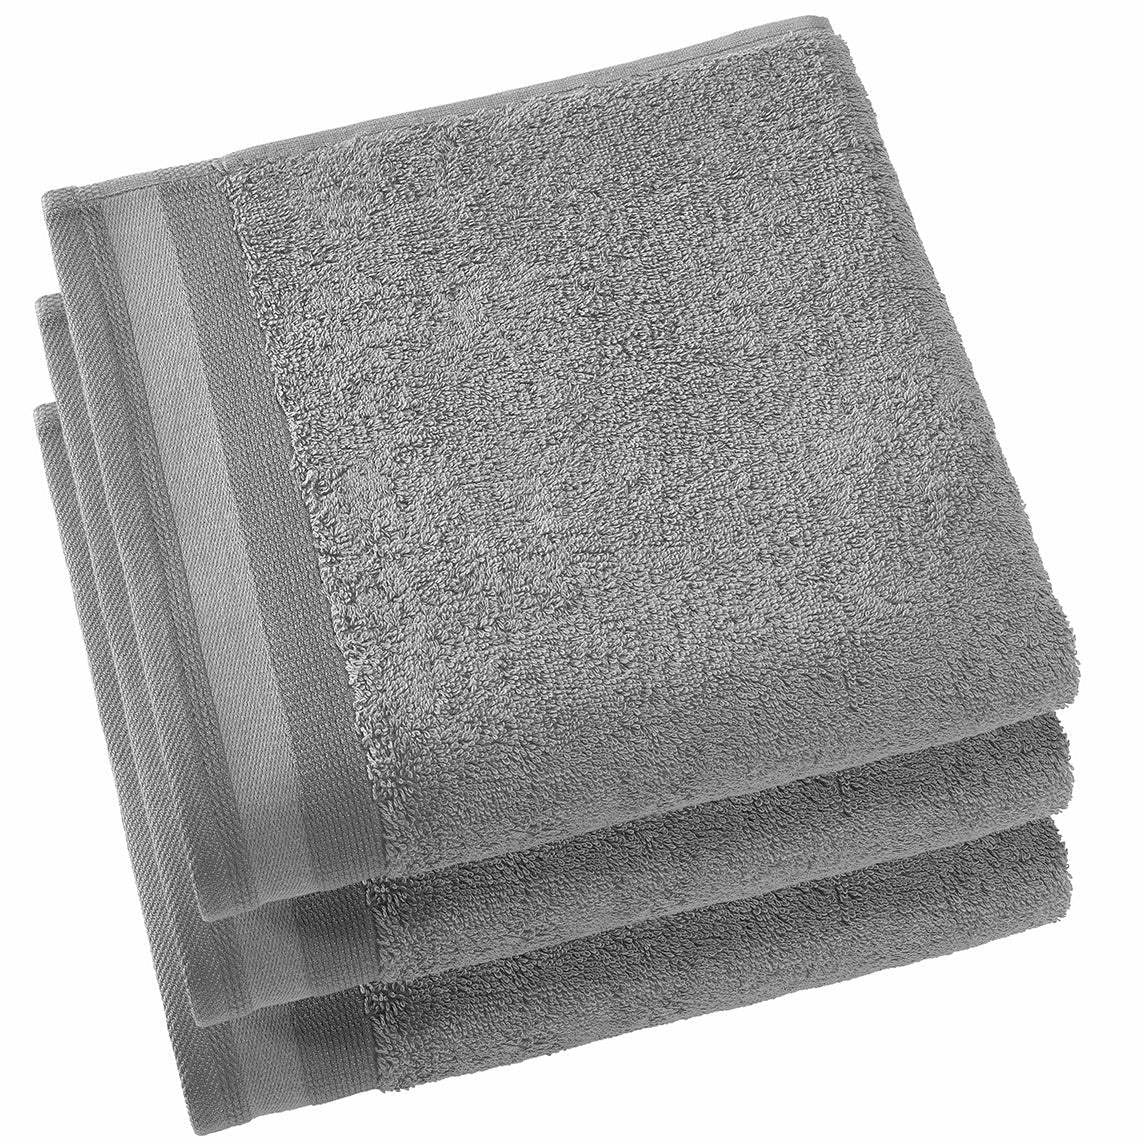 GASTENDOEKJES (3x) - Contessa Steel grey 40 x 60cm Gastendoek DE WITTE LIETAER Handdoek 50 x 100cm/3 Antraciet 